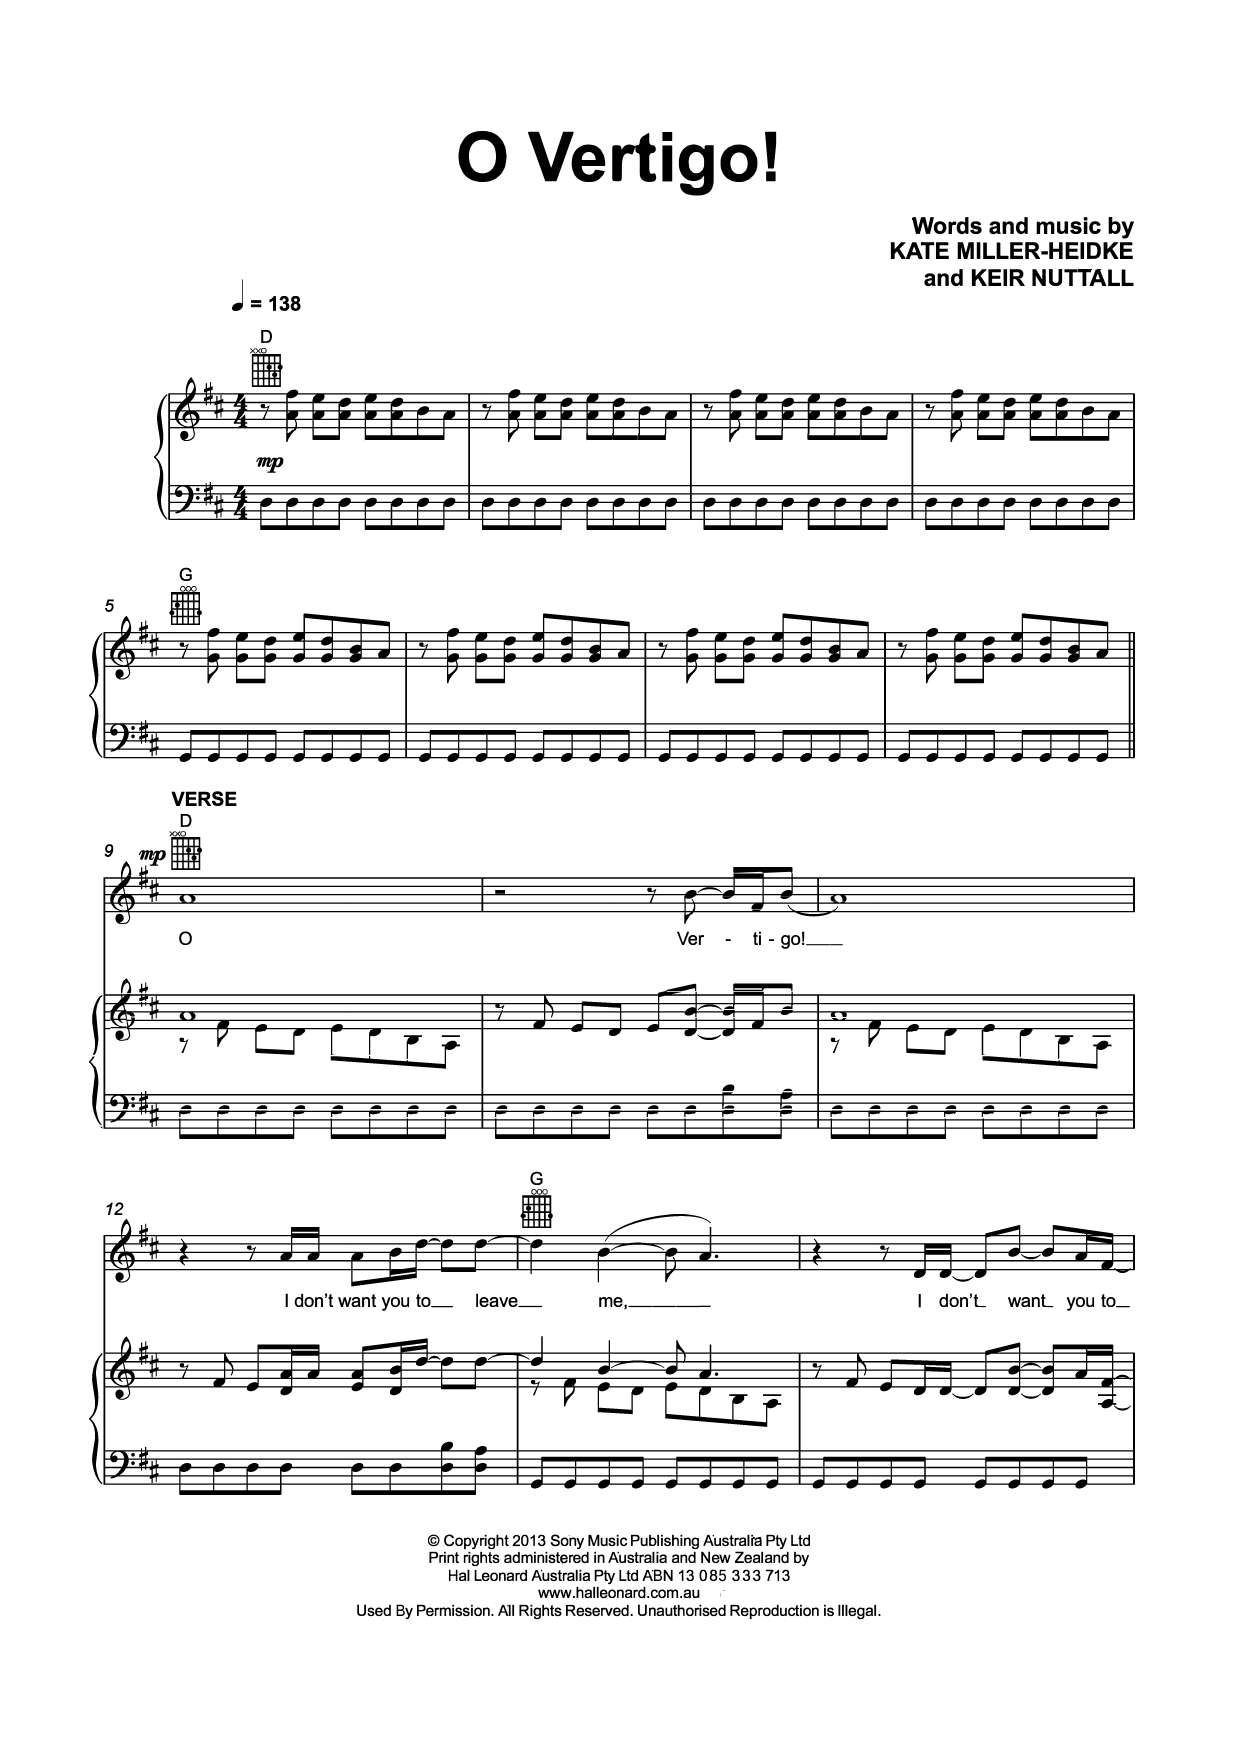 Kate Miller-Heidke O Vertigo! Sheet Music Notes & Chords for Piano, Vocal & Guitar (Right-Hand Melody) - Download or Print PDF